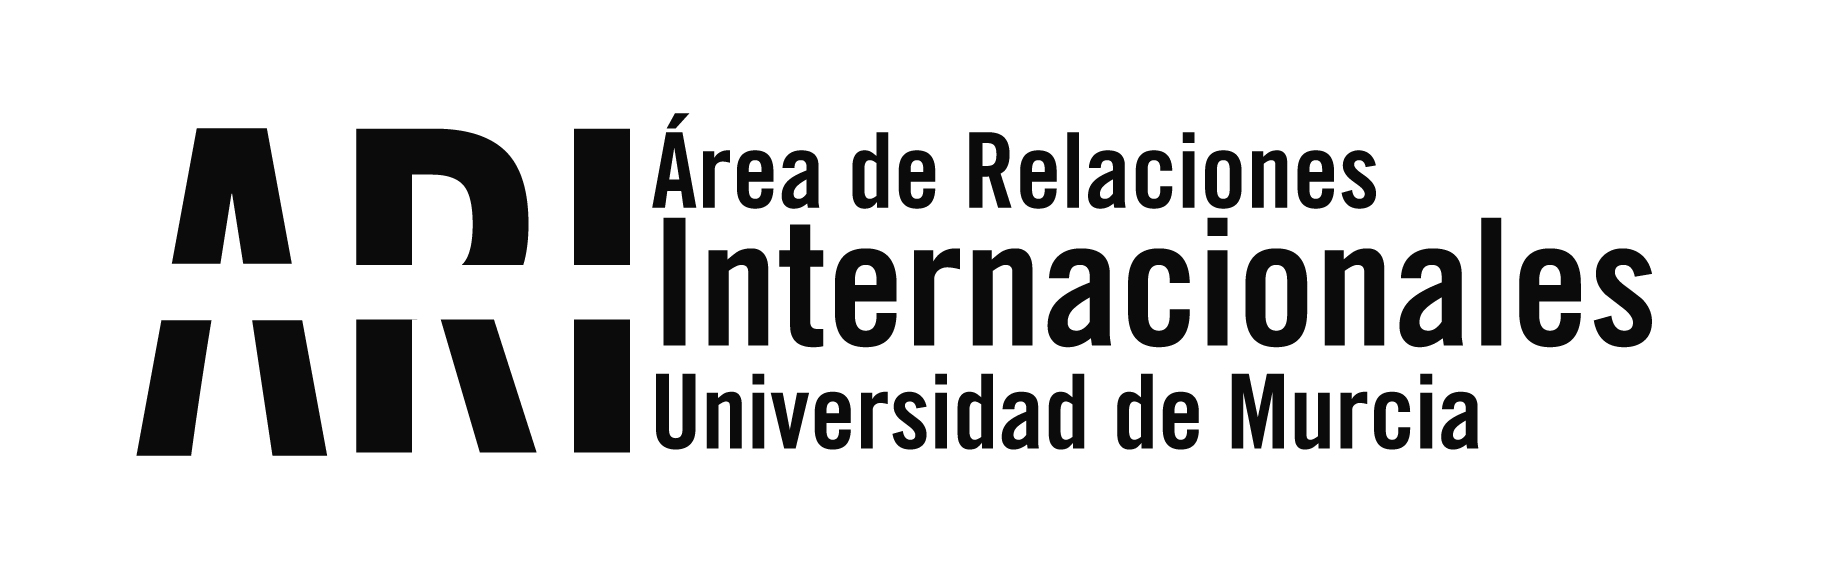 Boletín Informativo / Newsletter nº 23 del Vicerrectorado de Internacionalización de la UMU - 21 de enero de 2019 - Área de Relaciones Internacionales